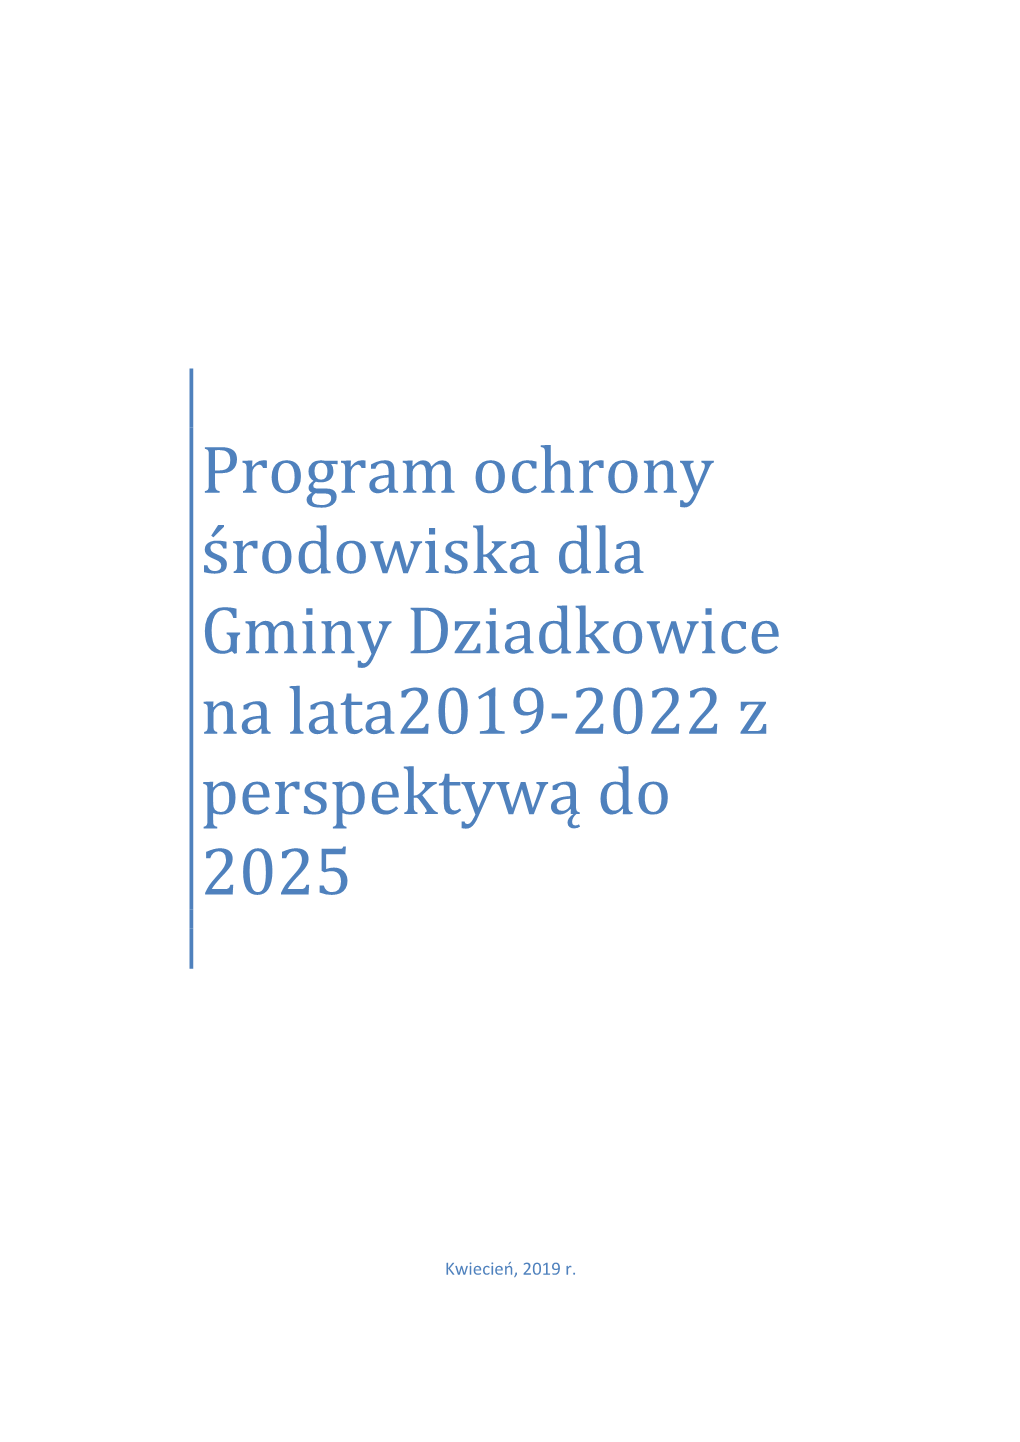 Program Ochrony Środowiska Dla Gminy Dziadkowice Na Lata2019-2022 Z Perspektywą Do 2025